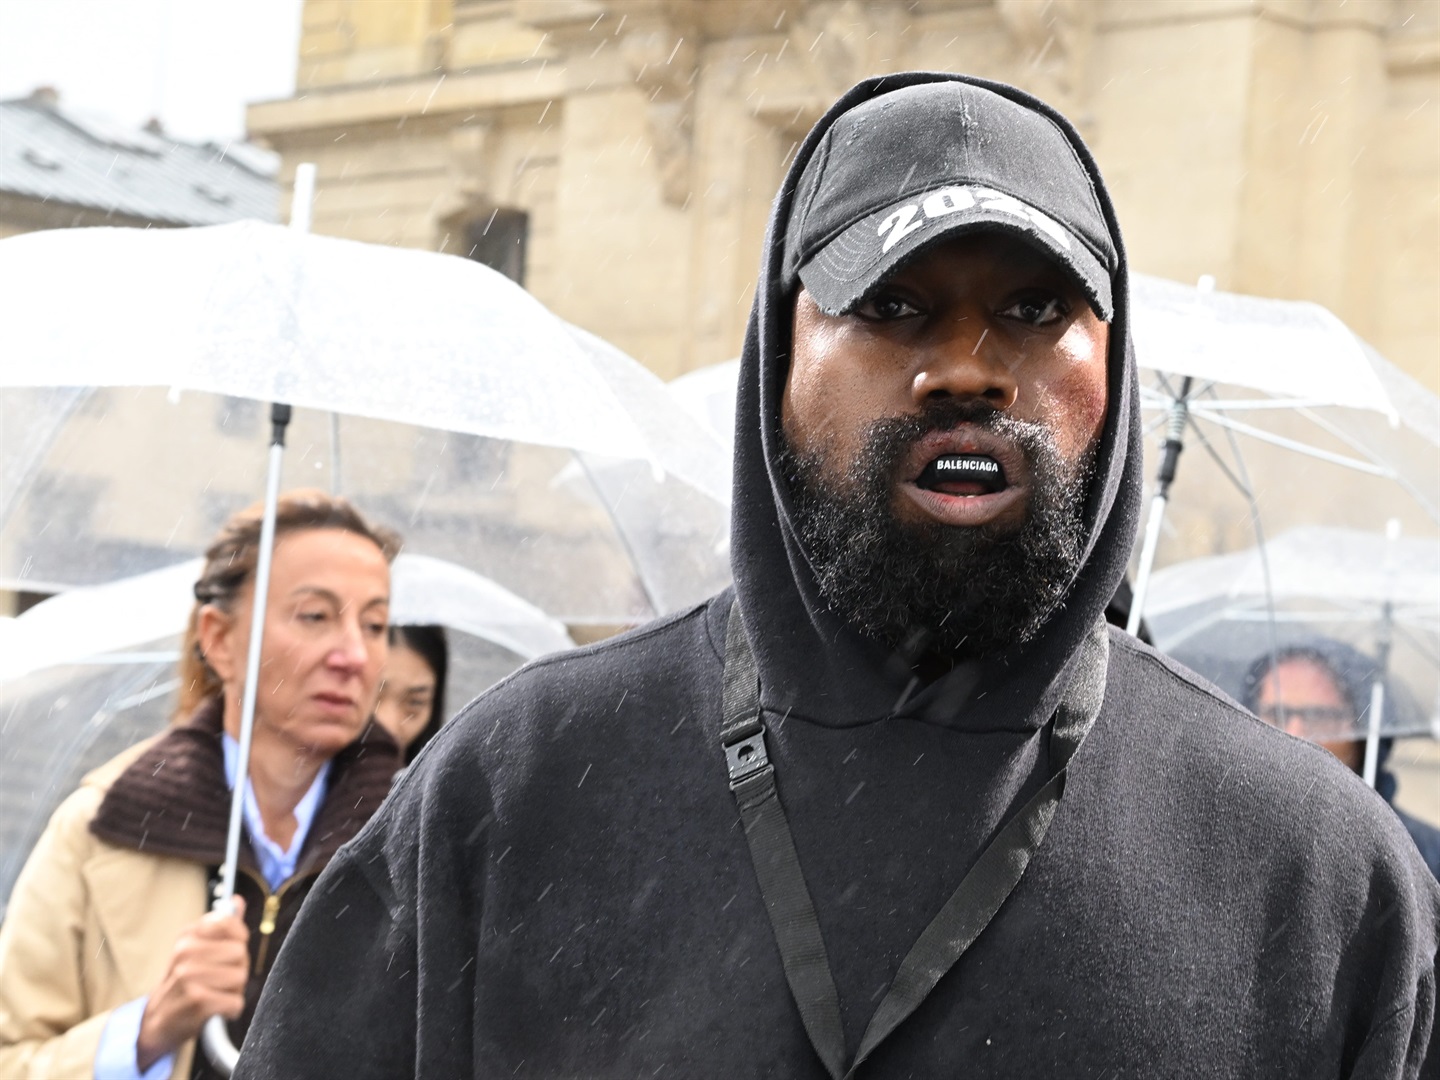 Kanye West apologises to Jewish fans